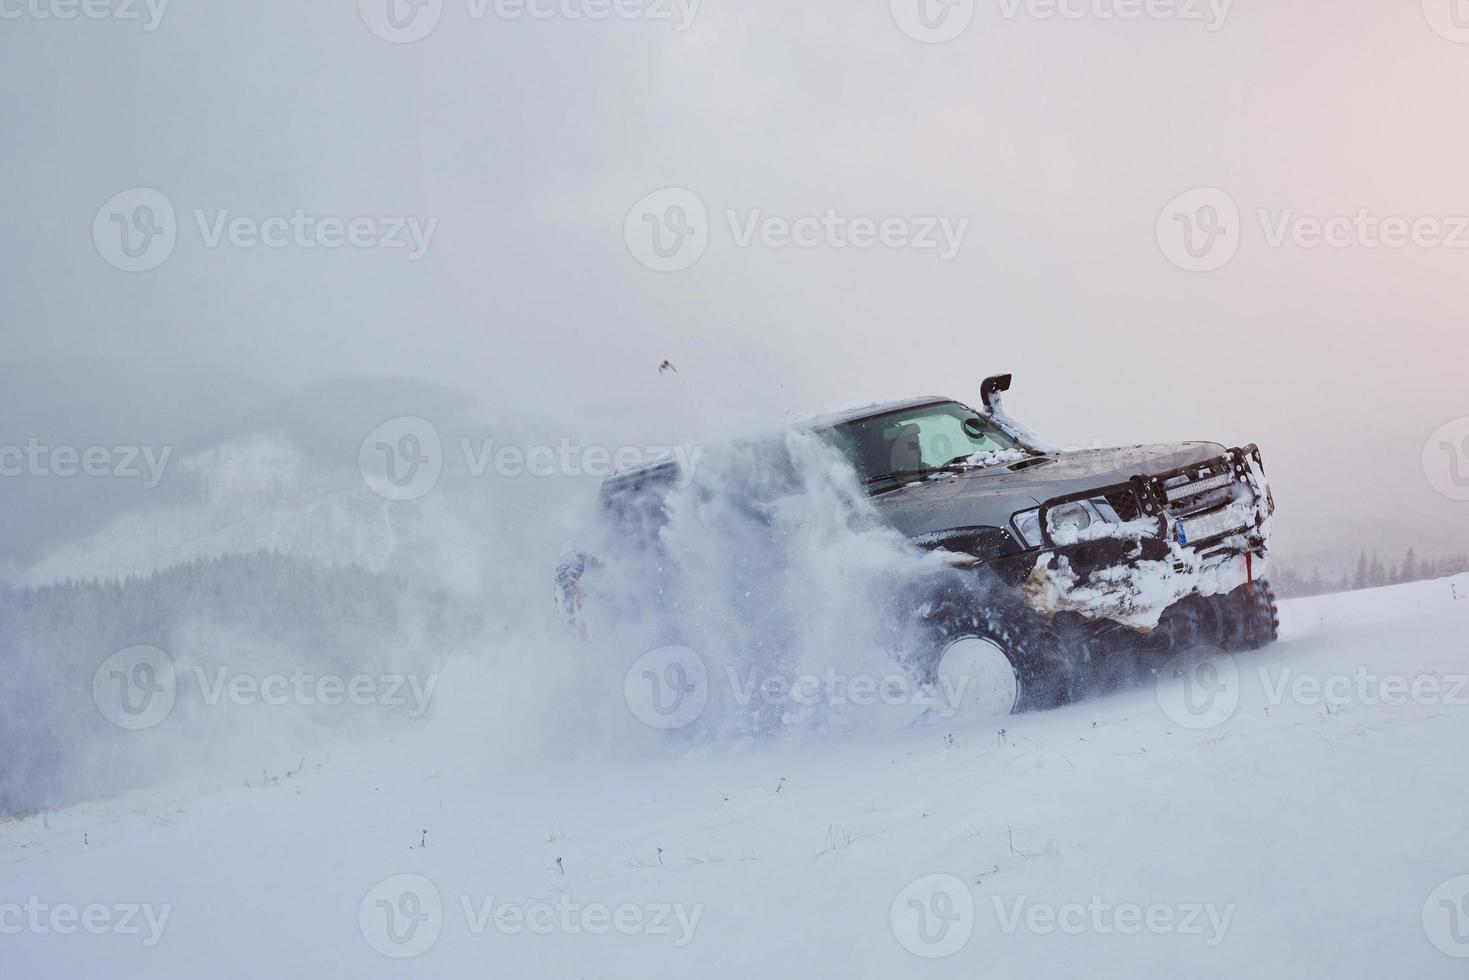 le suv roule sur les montagnes d'hiver conduisant à des risques de neige et de glace, à la dérive photo